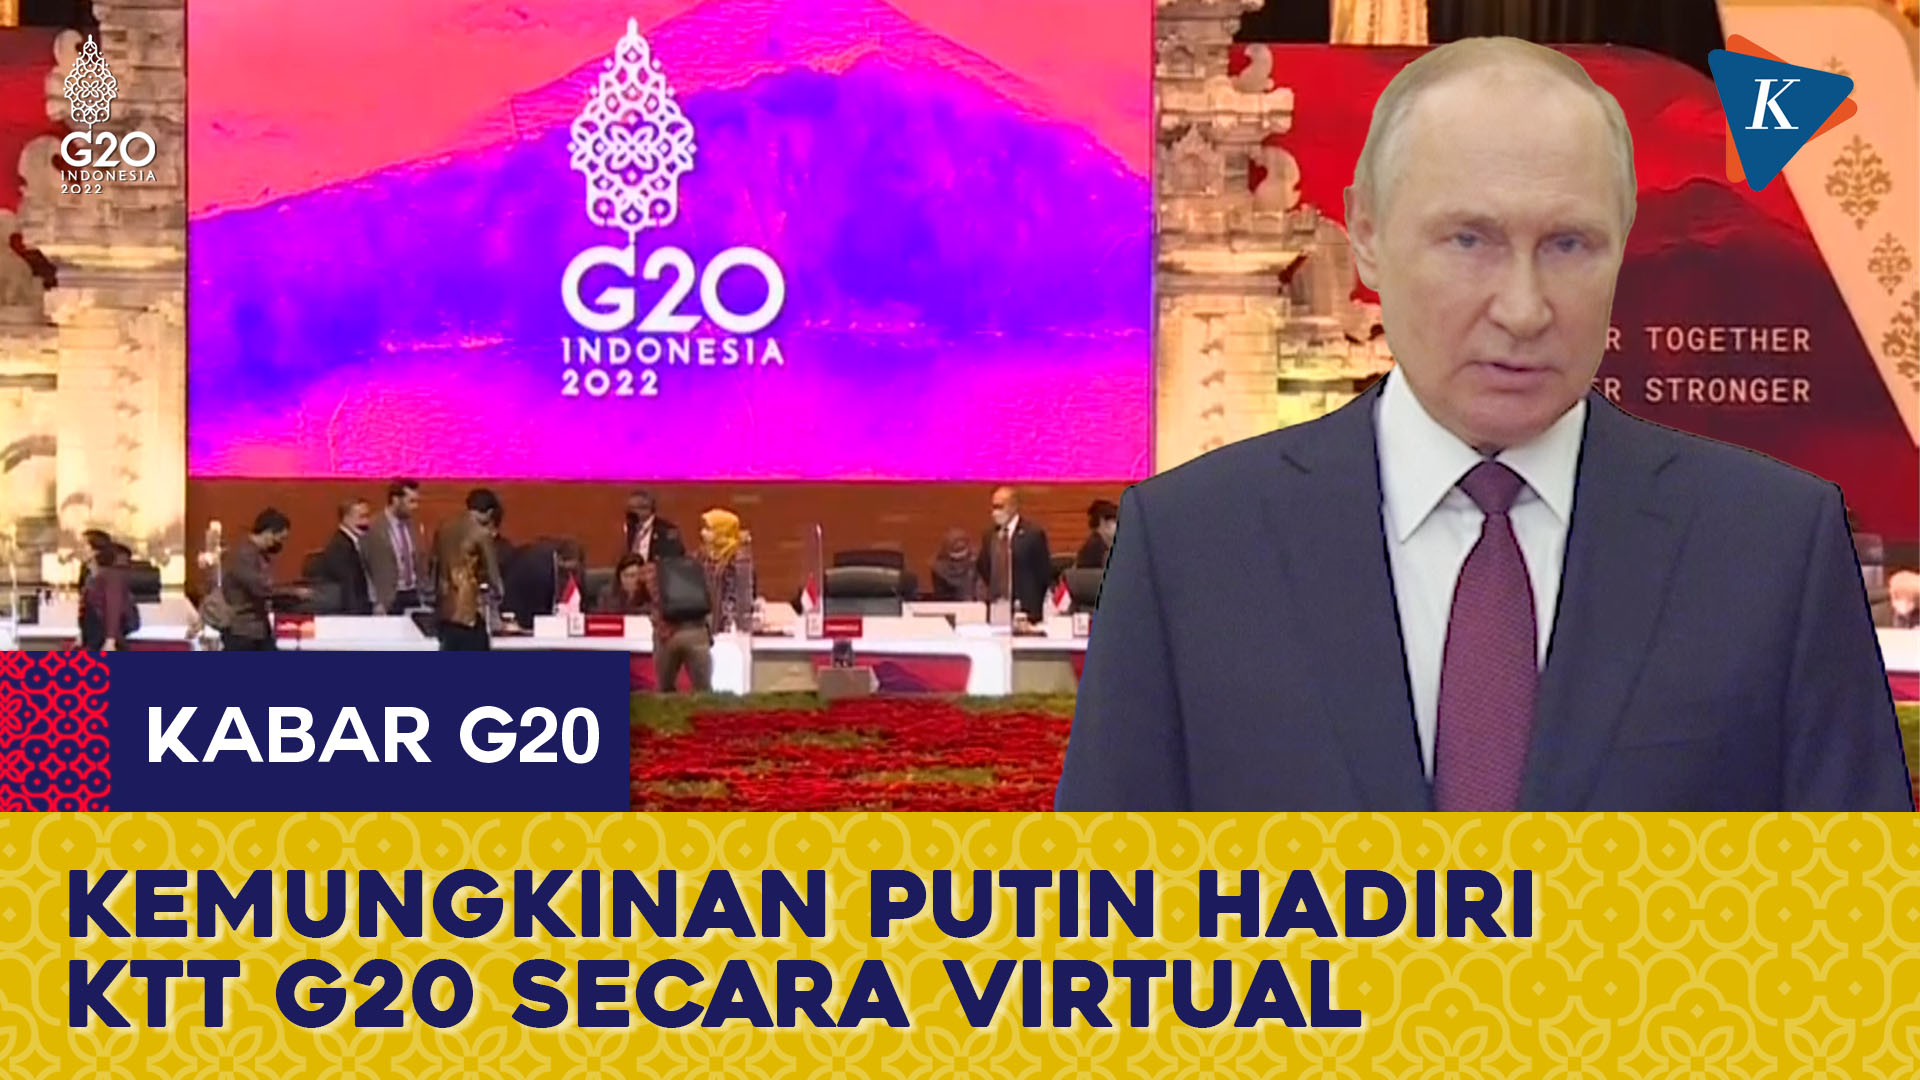 Luhut Sebut Kemungkinan Putin Hadiri KTT G20 Secara Virtual